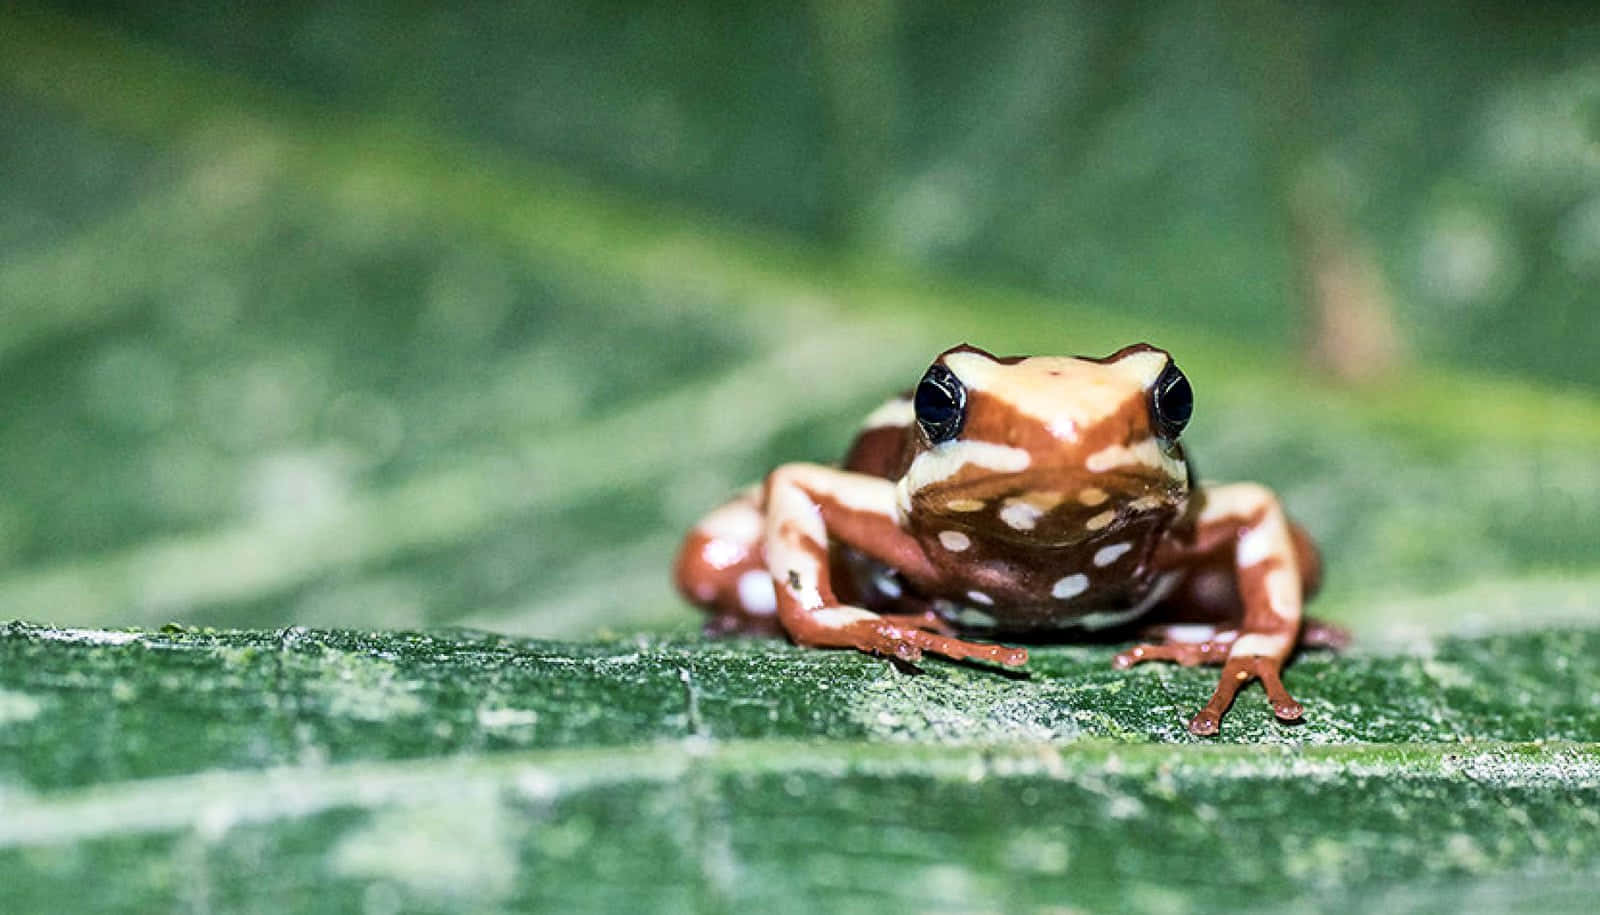 Colorful Poison Frog On Leaf.jpg Wallpaper